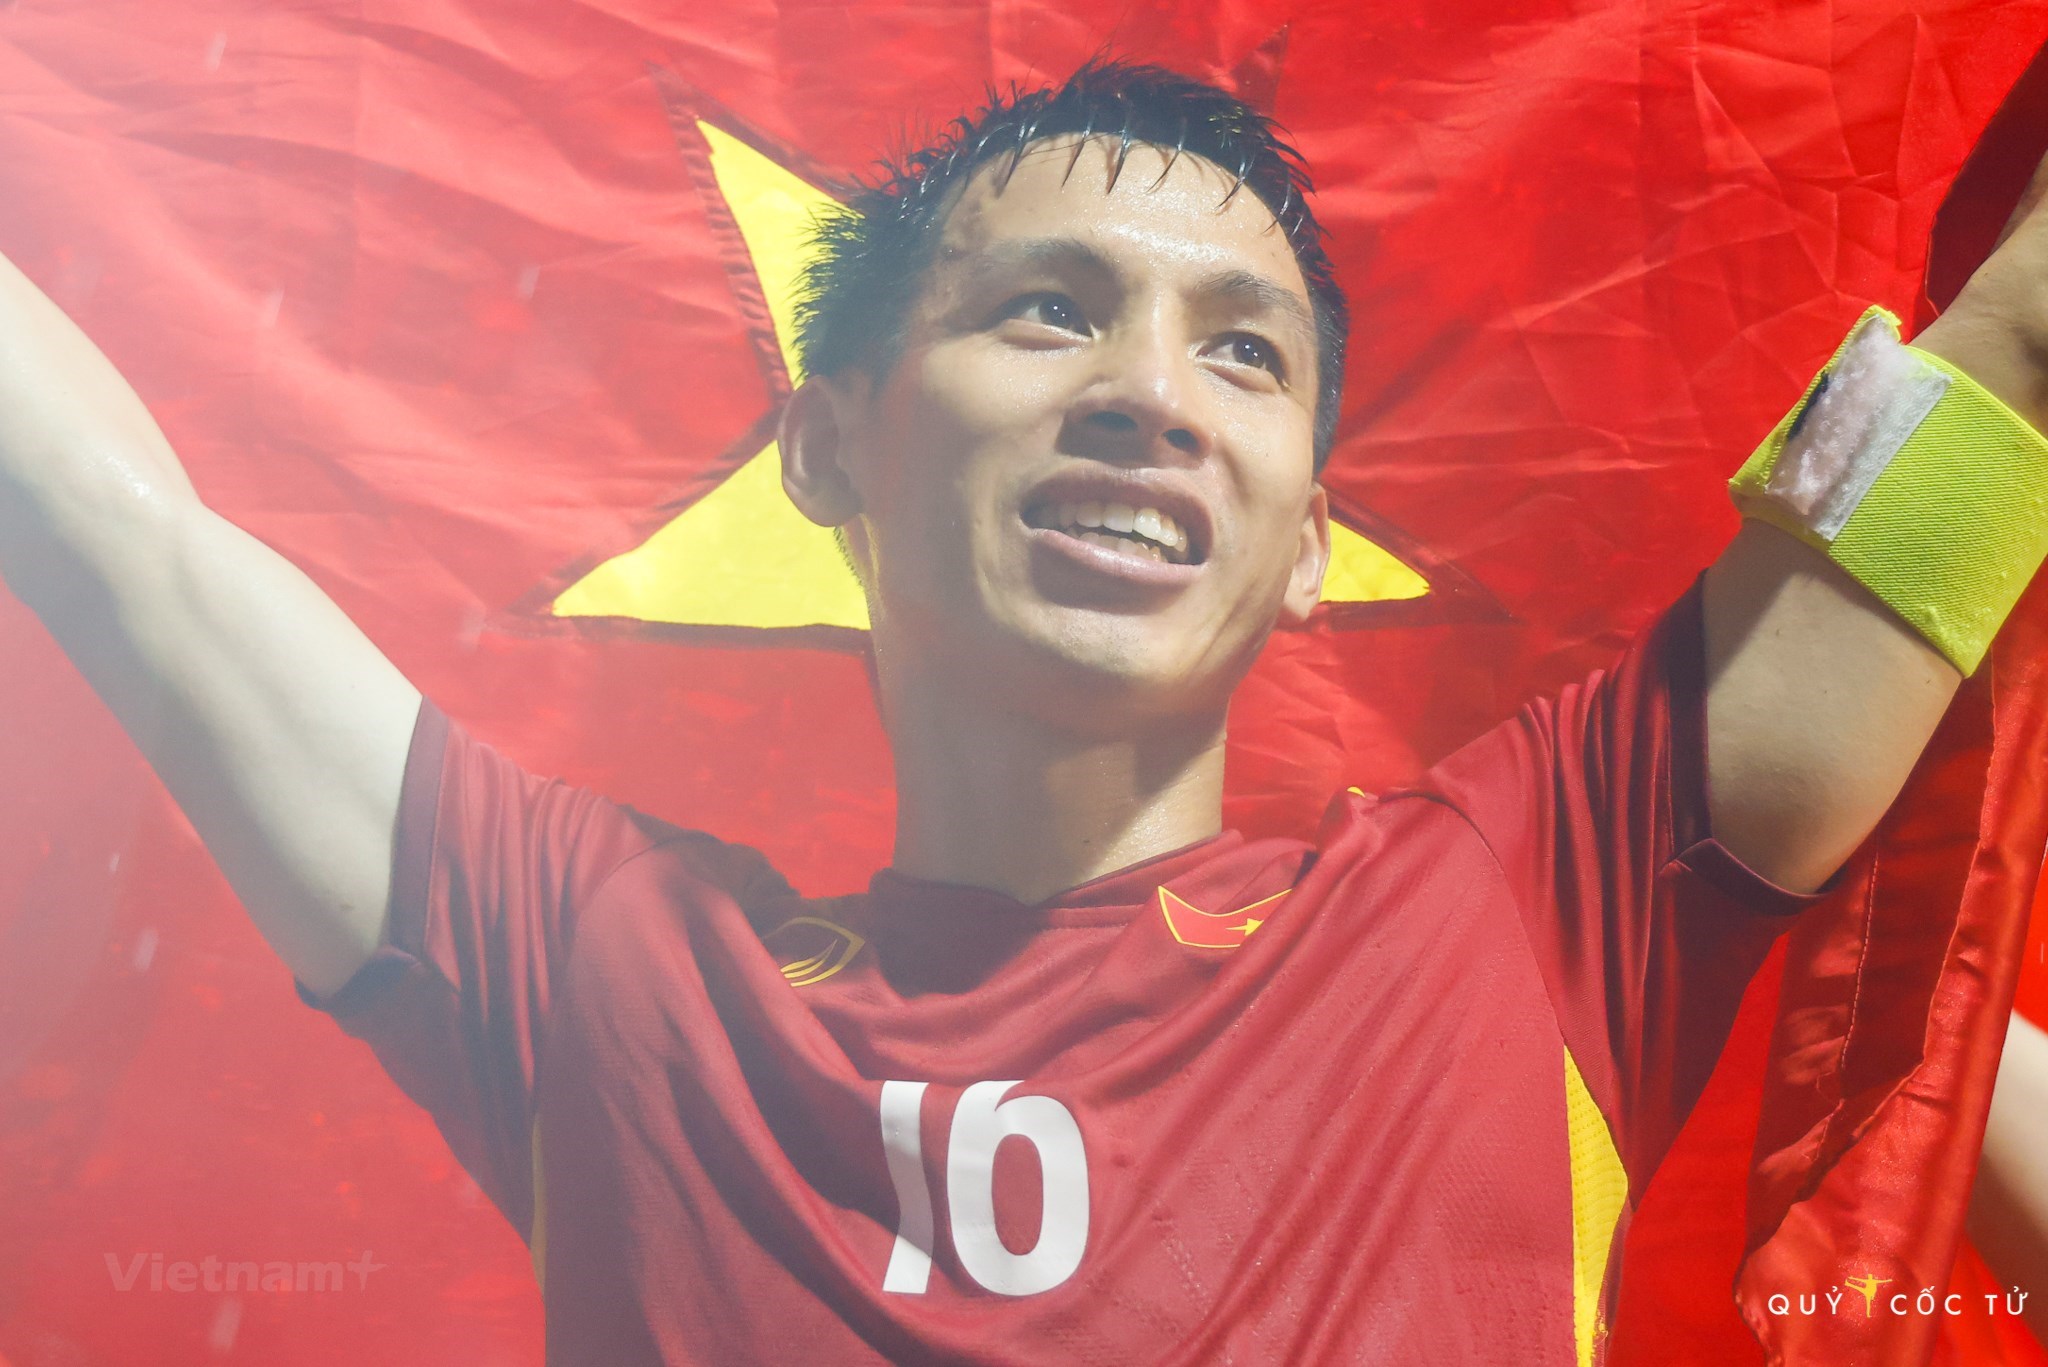 Sắp tới đây là SEA Games 31 - mảnh đất Việt Nam sẽ bùng nổ một mùa giải thể thao đầy sôi động và hứng khởi. Hãy thưởng thức những hình ảnh tuyệt vời về sự kiện này trên đất nước Việt Nam, và cảm nhận sự hào hứng, nhiệt huyết của mỗi người dân Việt.